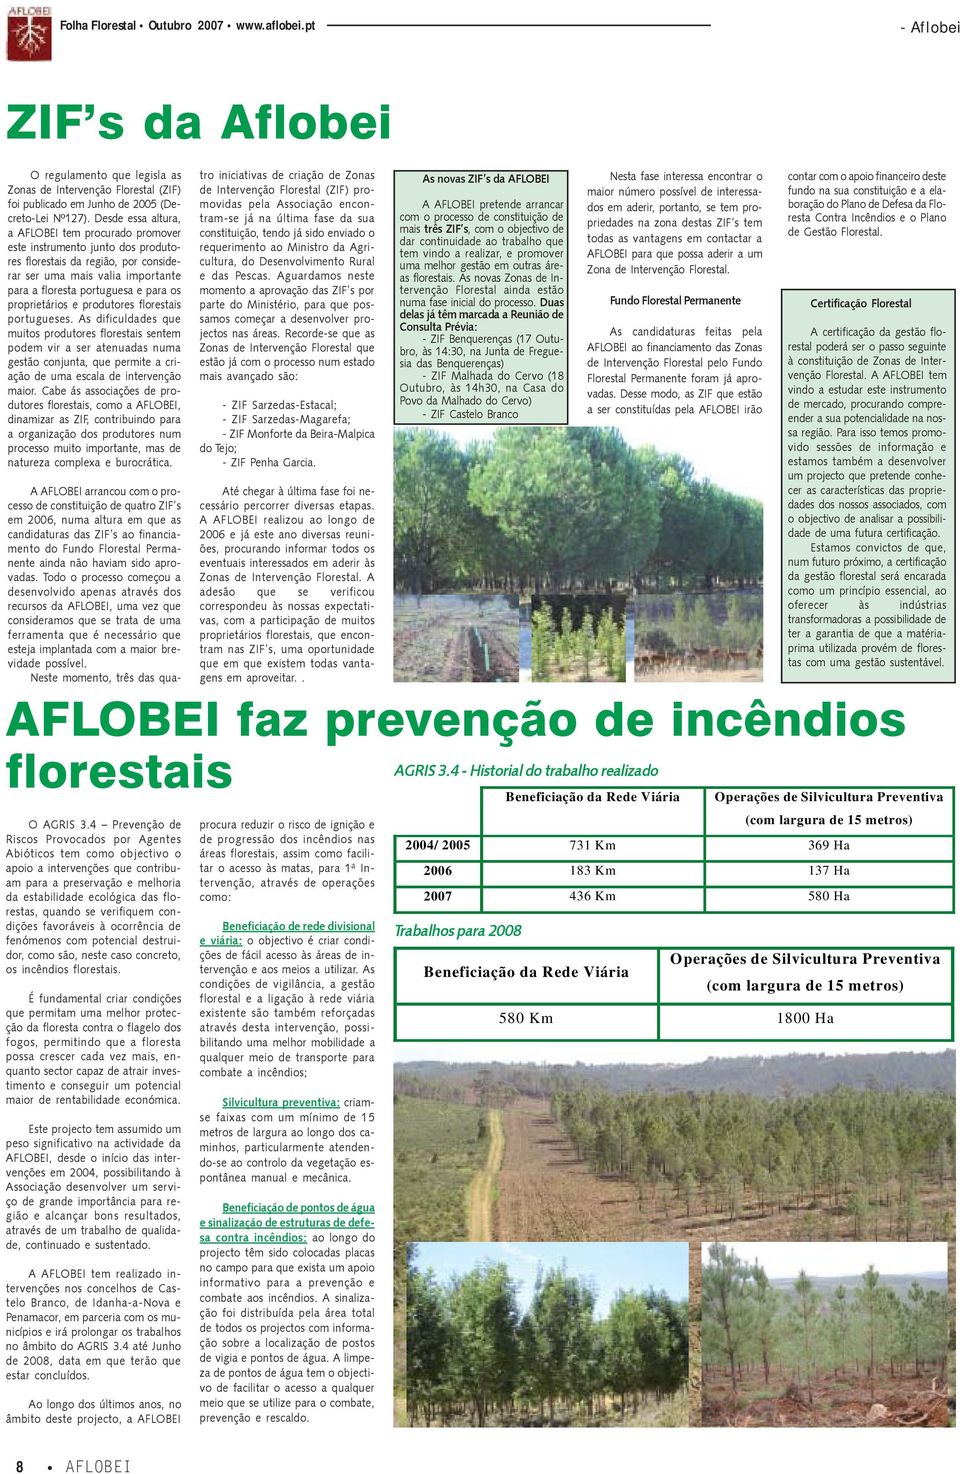 proprietários e produtores florestais portugueses.